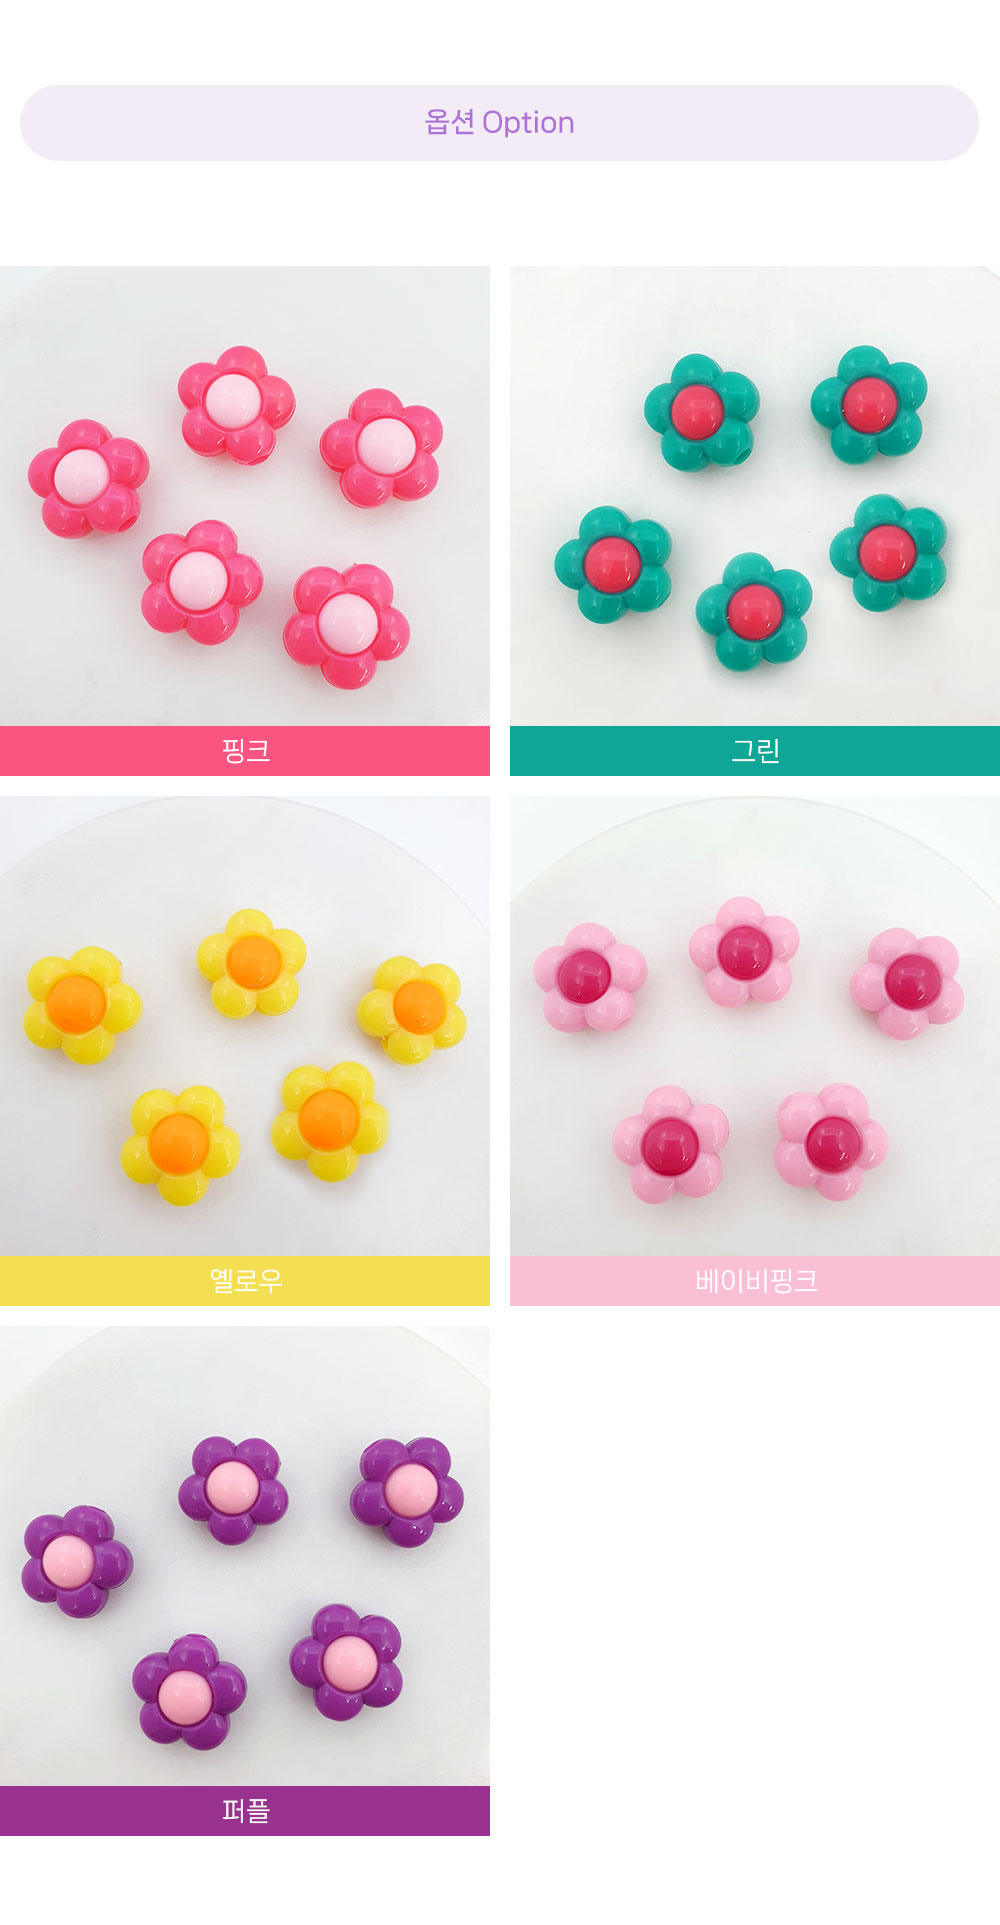 컬러아크릴 꽃비즈는 컬러 옵션이 5가지입니다. 핑크,그린, 옐로우,베이비핑크,퍼플 입니다. 